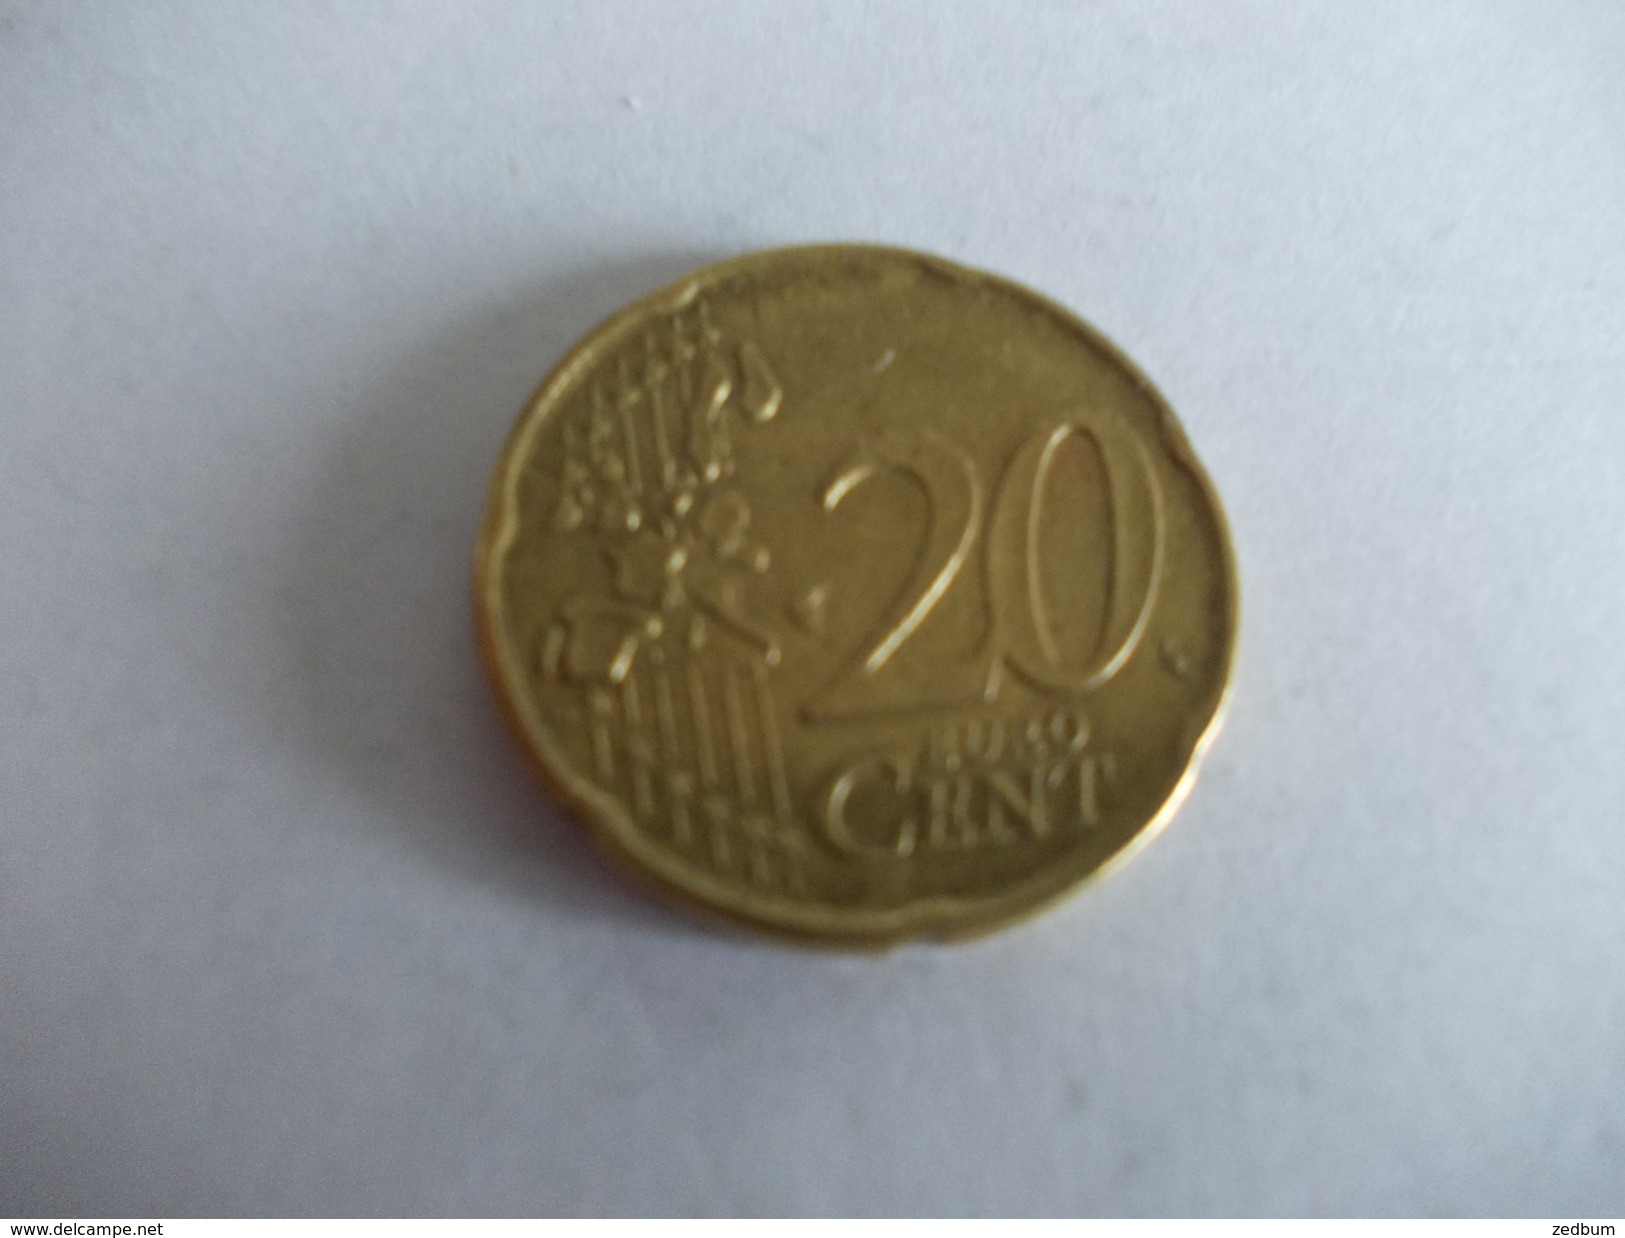 Monnaie Pièce De 20 Centimes D' Euro De Belgique Année 2000 Valeur Argus 1 &euro; - Belgium